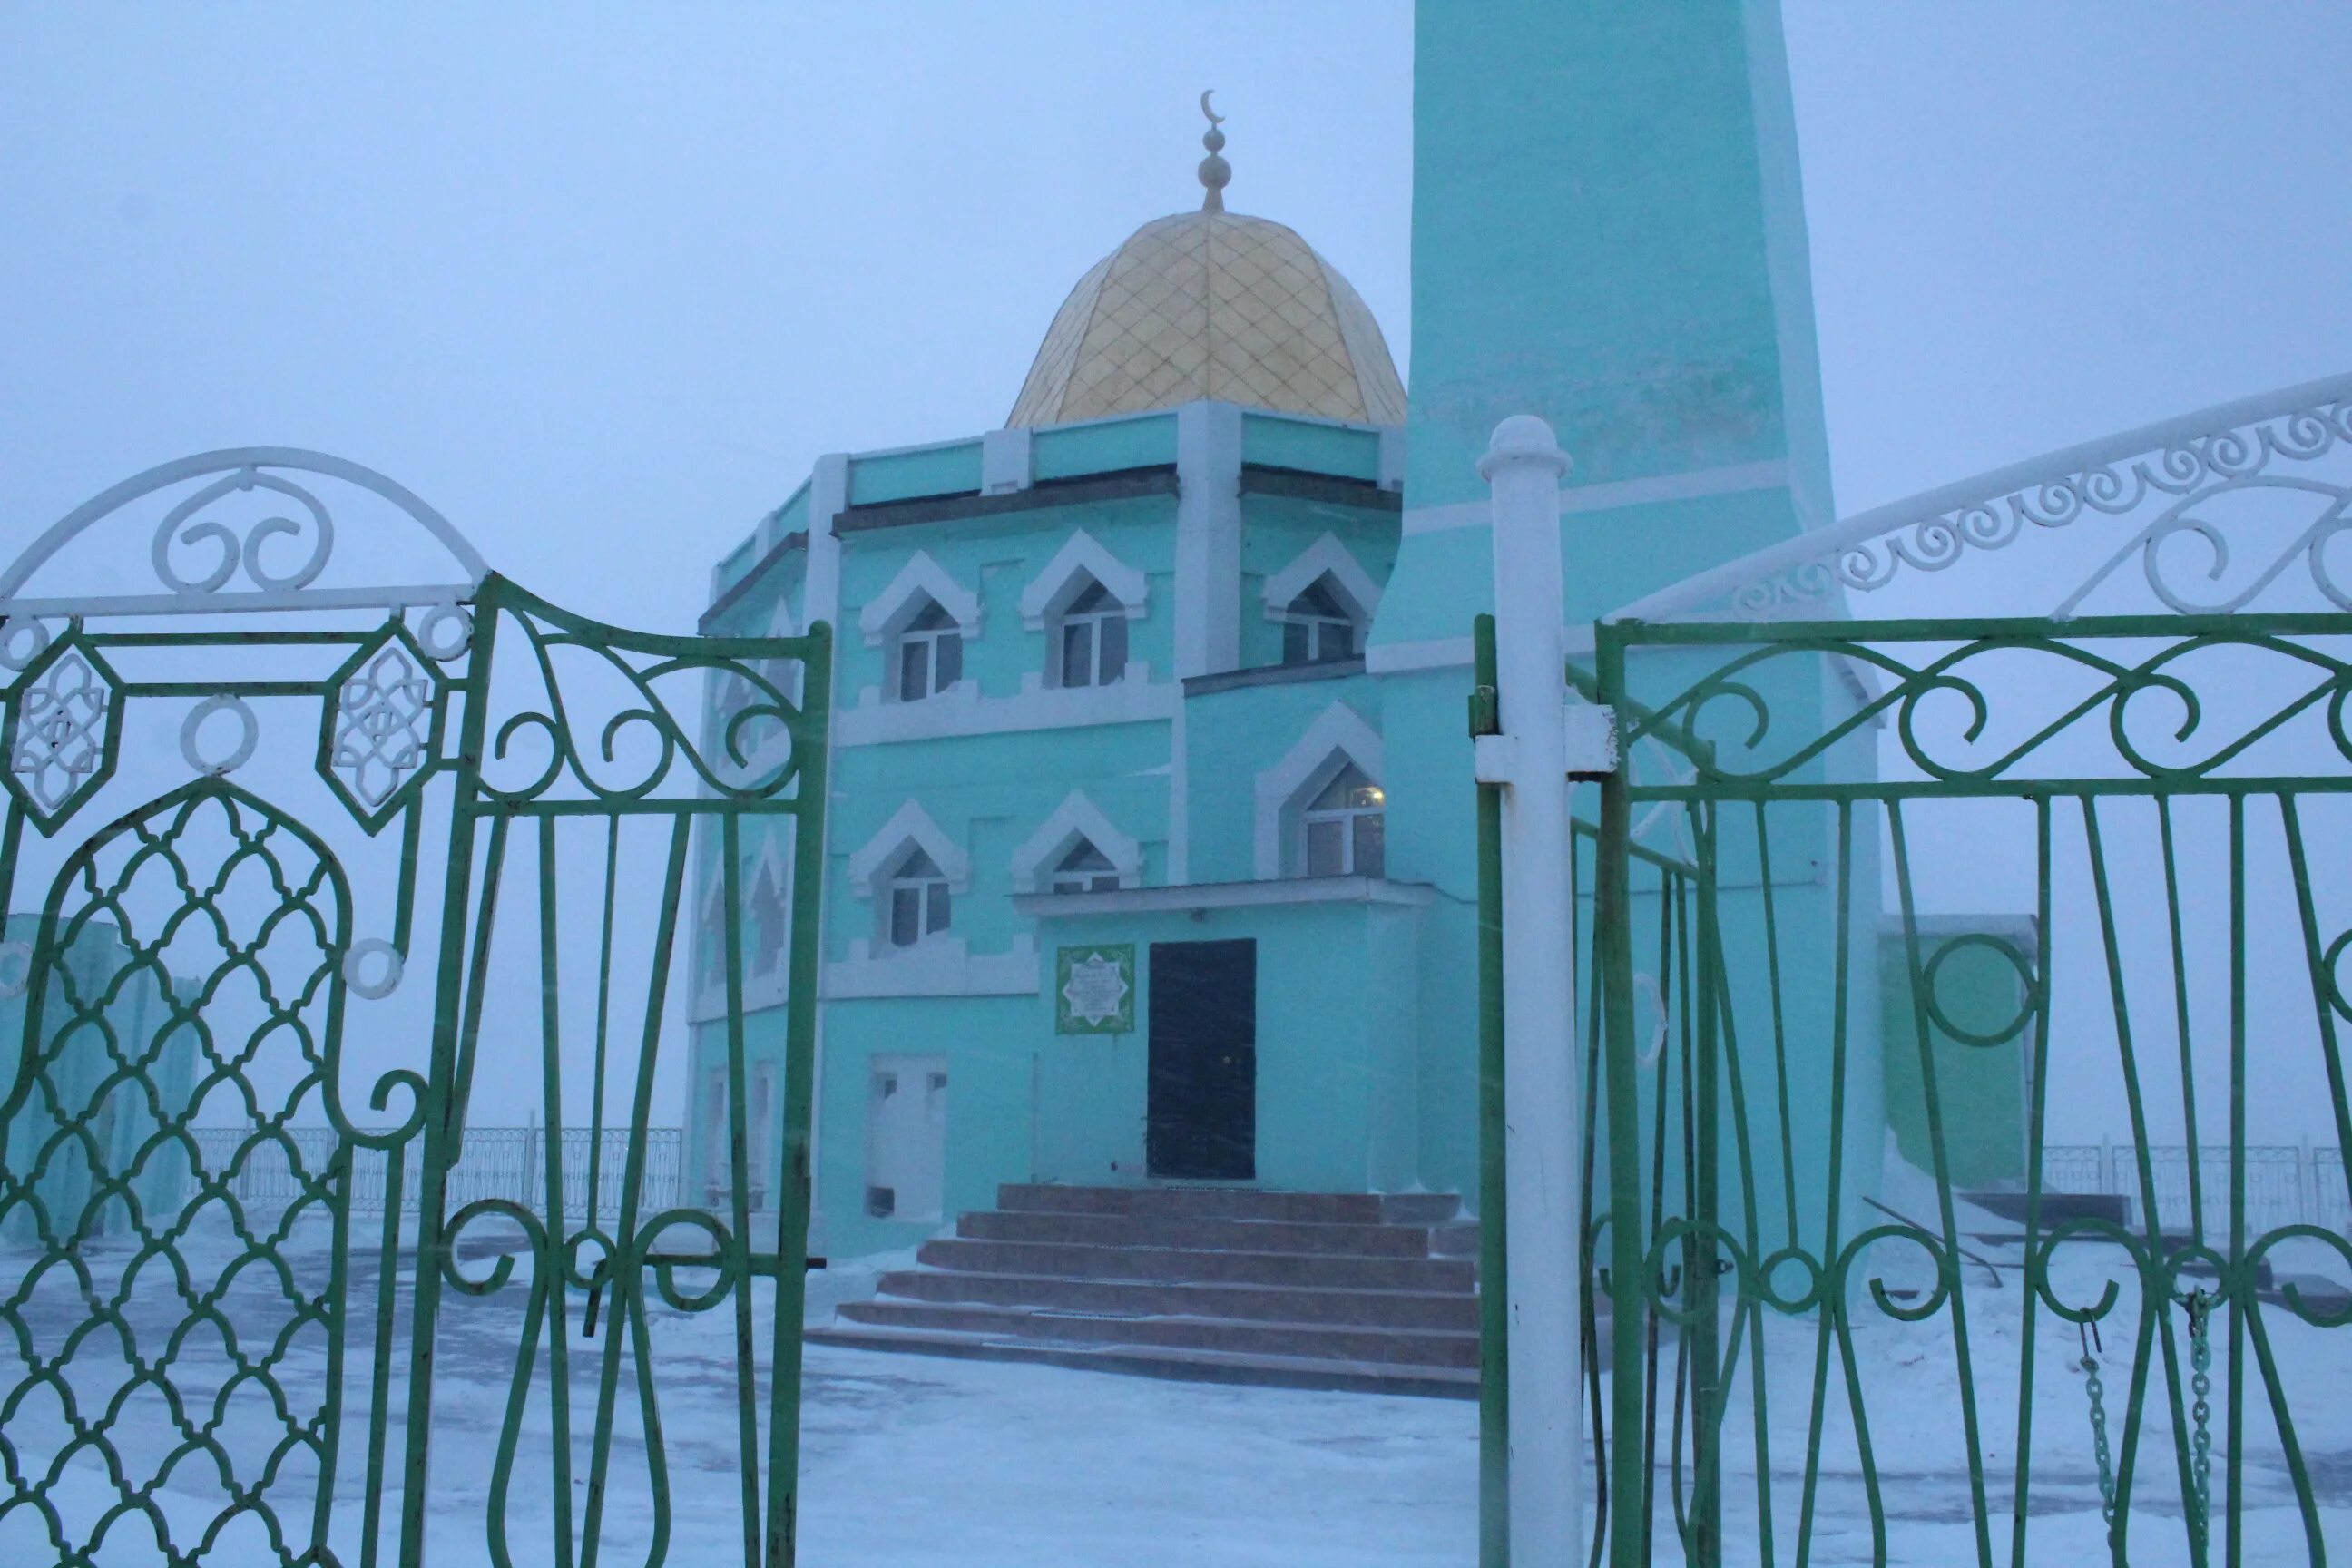 Нурд камаль. Мечеть Нурд-Камаль. Мечеть Нурд-Камаль Салехард. Г Норильск мечеть Нурд-Камаль. Нурд-Камал — мечеть в городе Норильск.